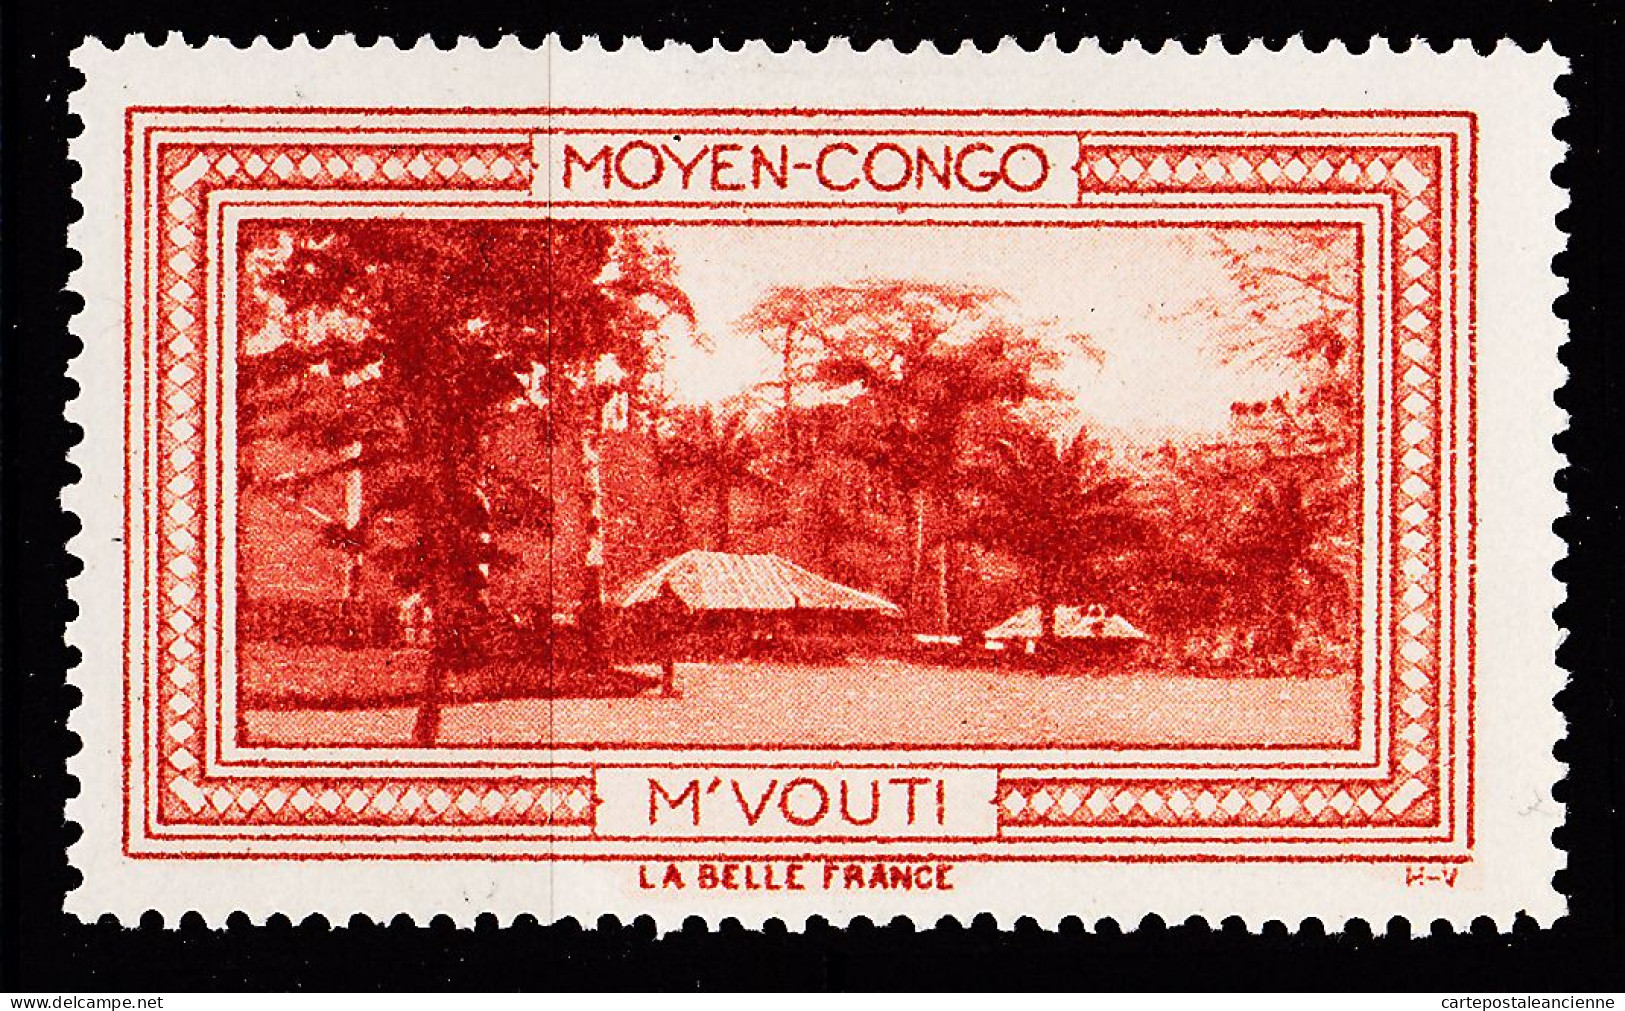 12971 ● M'VOUTI MOYEN-CONGO Vignette De Collection LA BELLE FRANCE 1925s H-V Erinnophilie - Turismo (Viñetas)